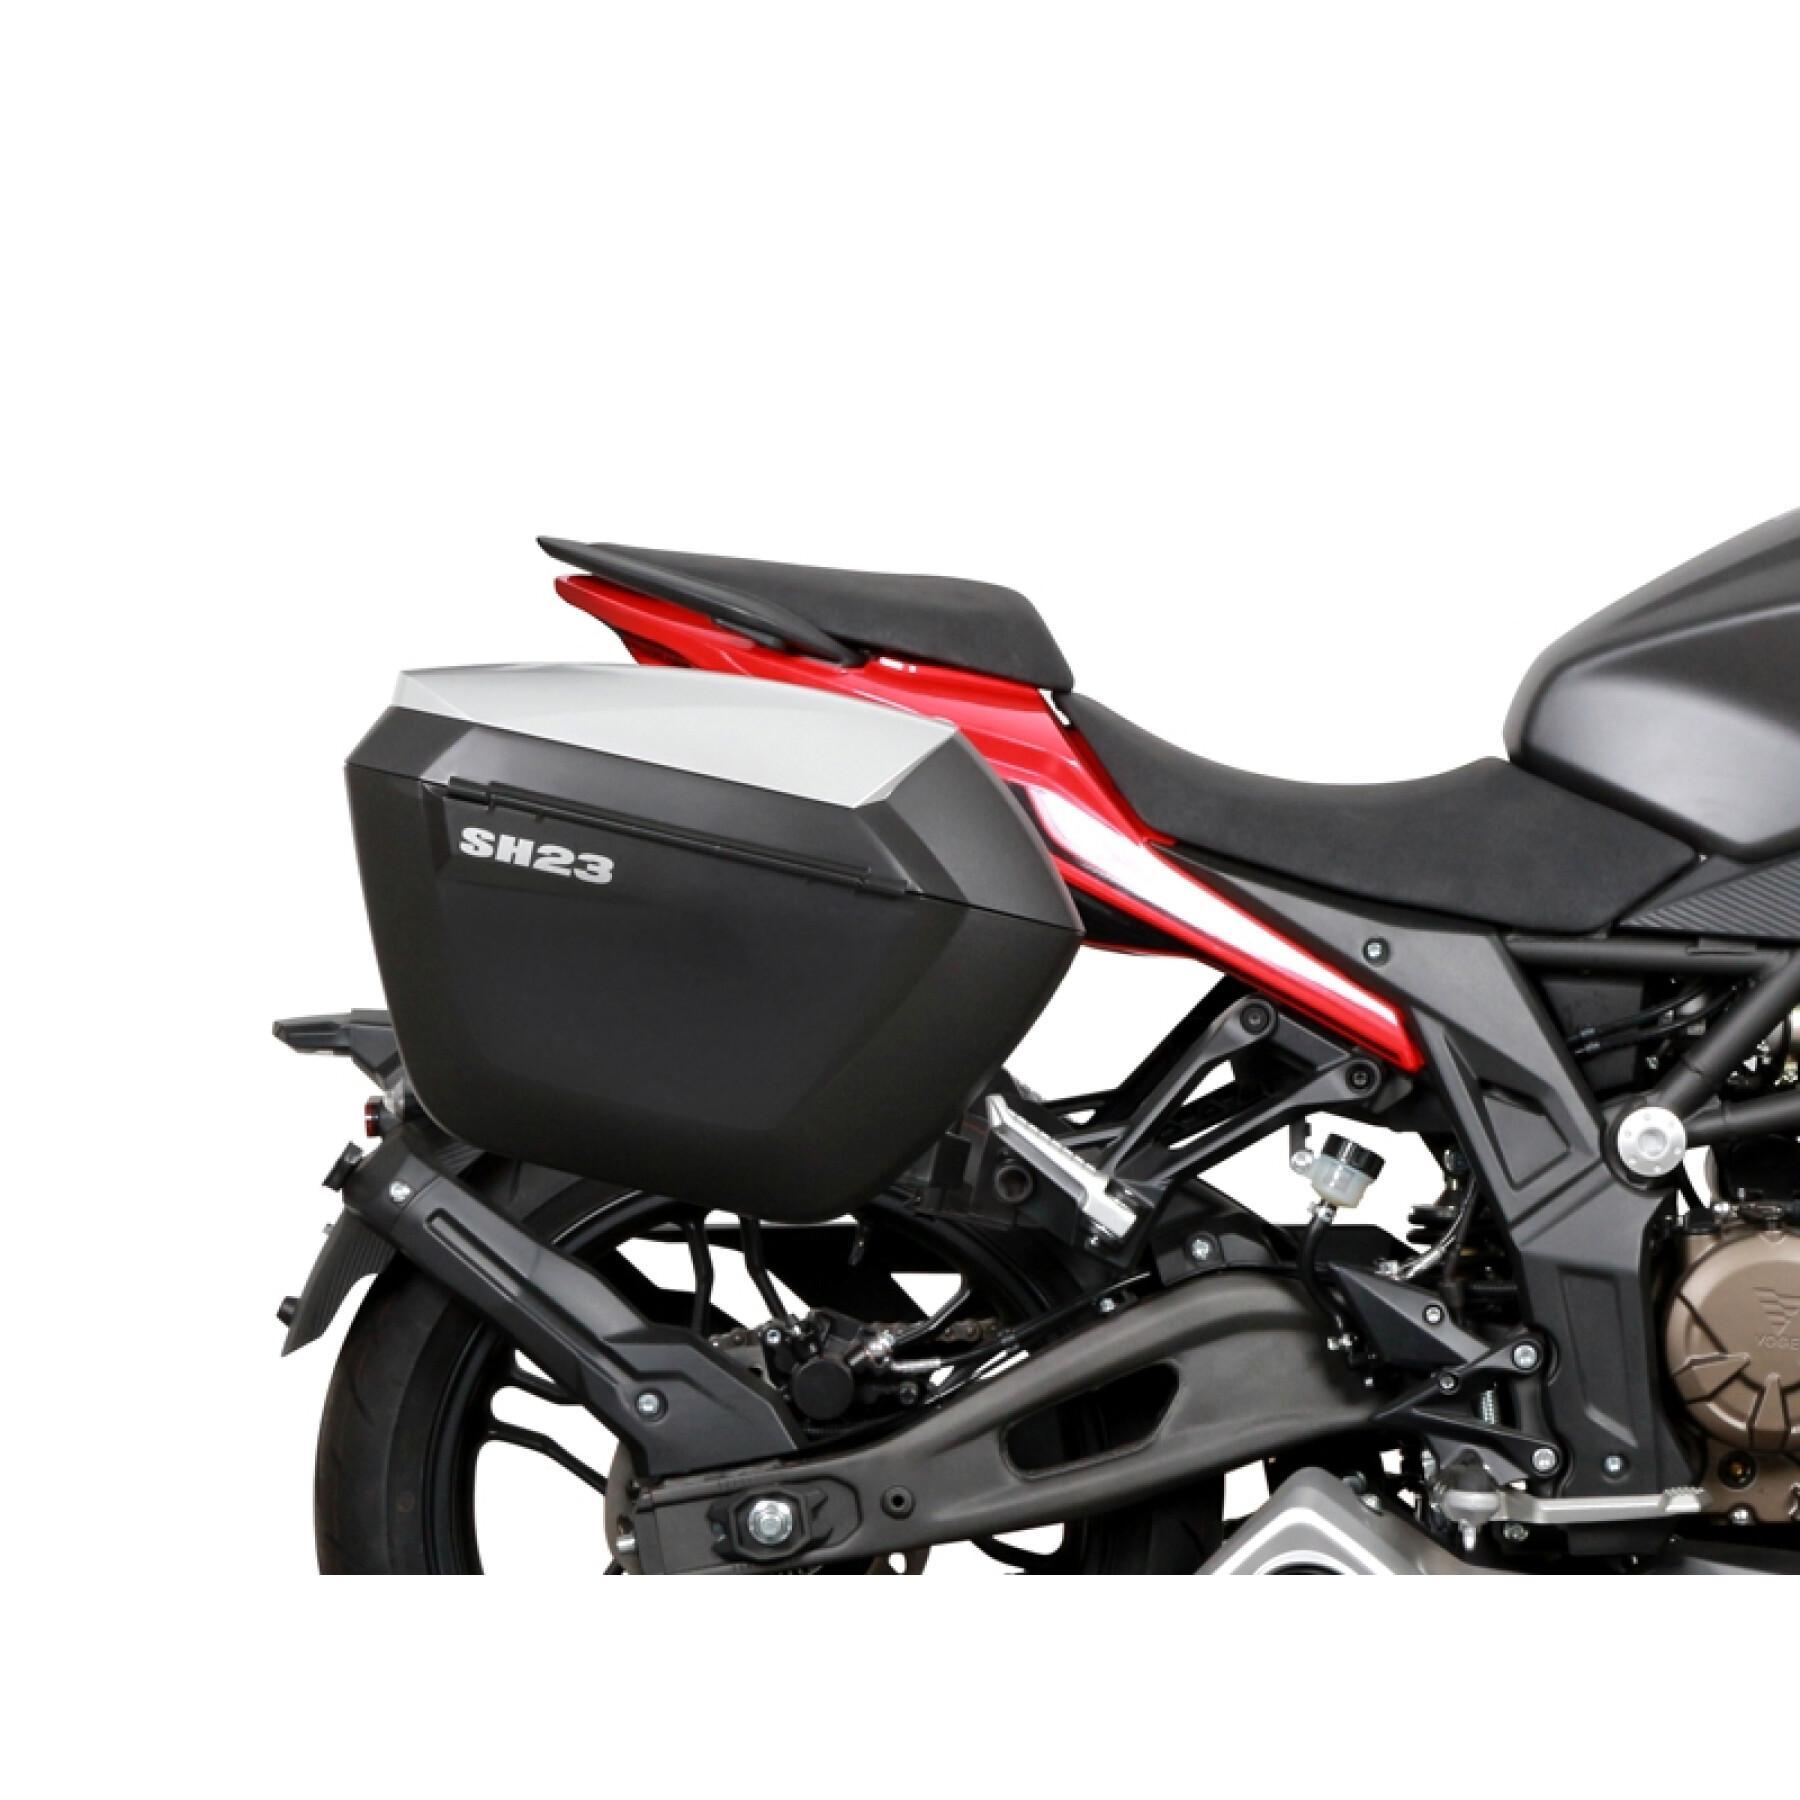 Soporte maleta lateral moto Shad 3P System Voge 300R 2020-2020